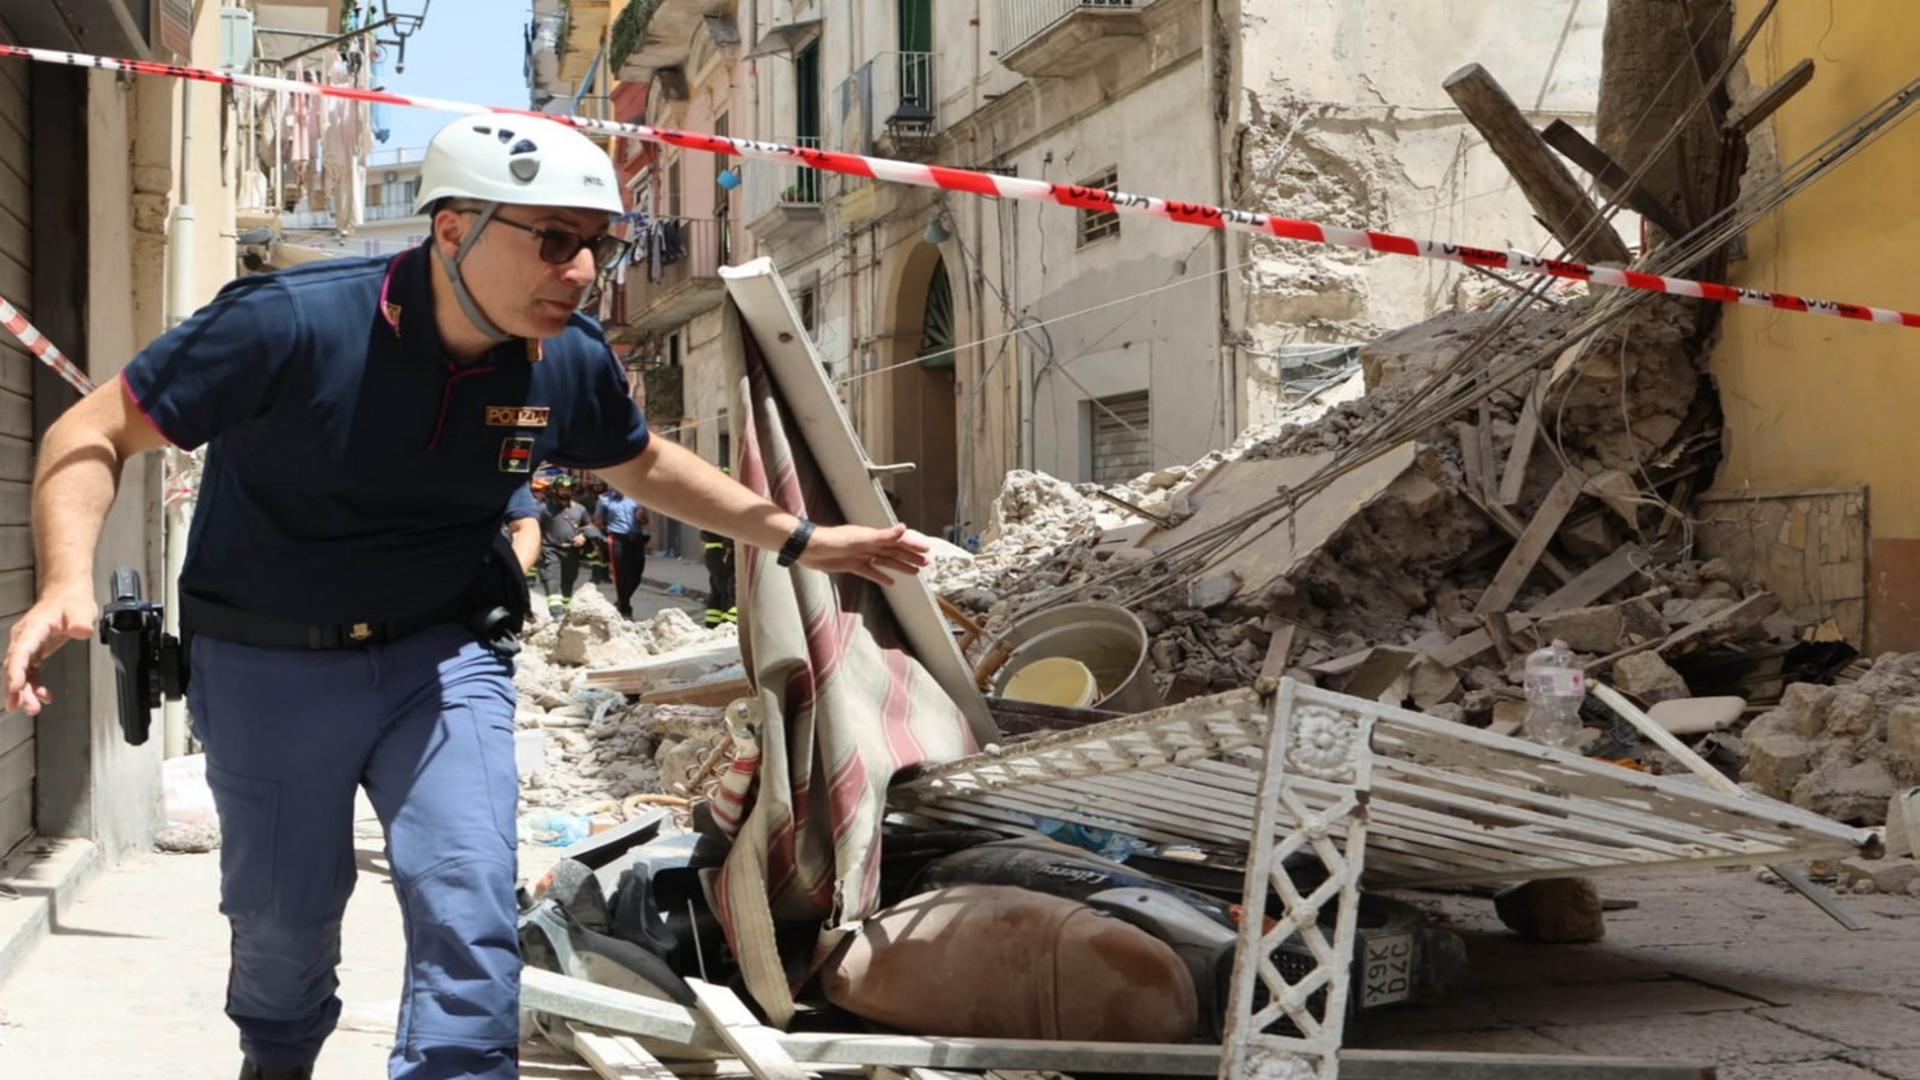 Intervenție contracronometru lângă Napoli. O clădire s-a prăbușit, se caută victime sub ruine - FOTO